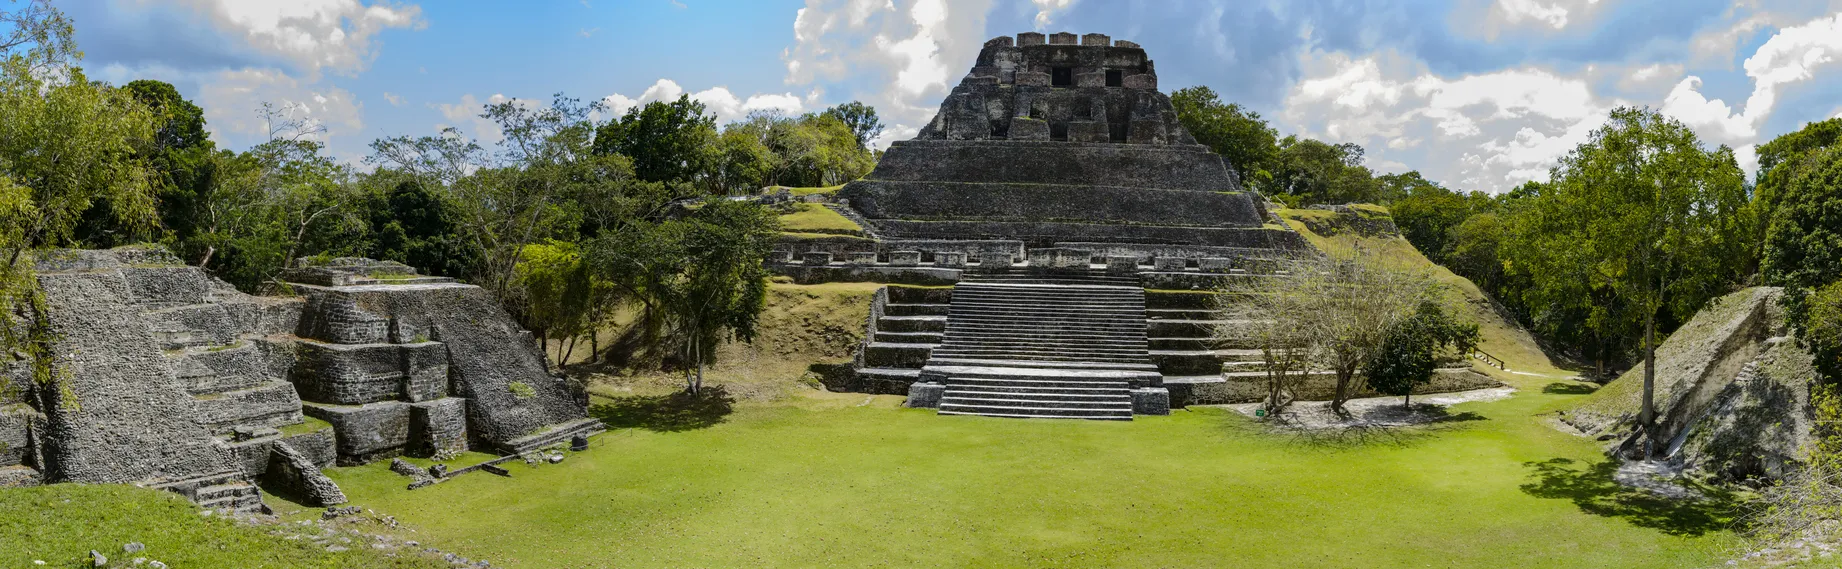 Le site archéologique des ruines mayas de Xunantunich au Belize © iStock / OGphoto